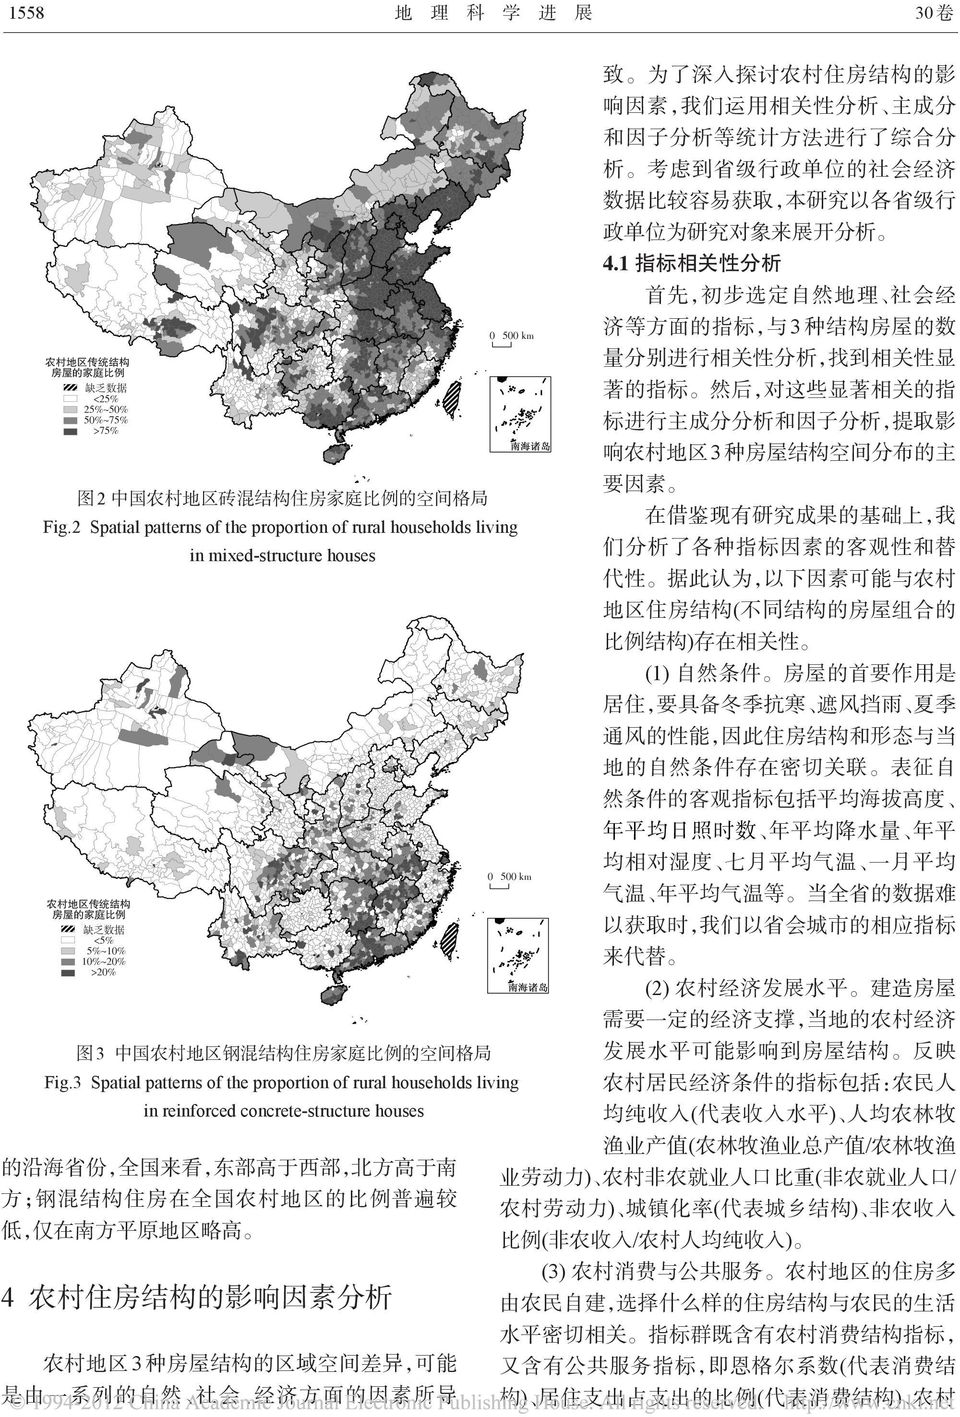 中国农村地区砖混结构住房家庭比例的空间格局 Fig.